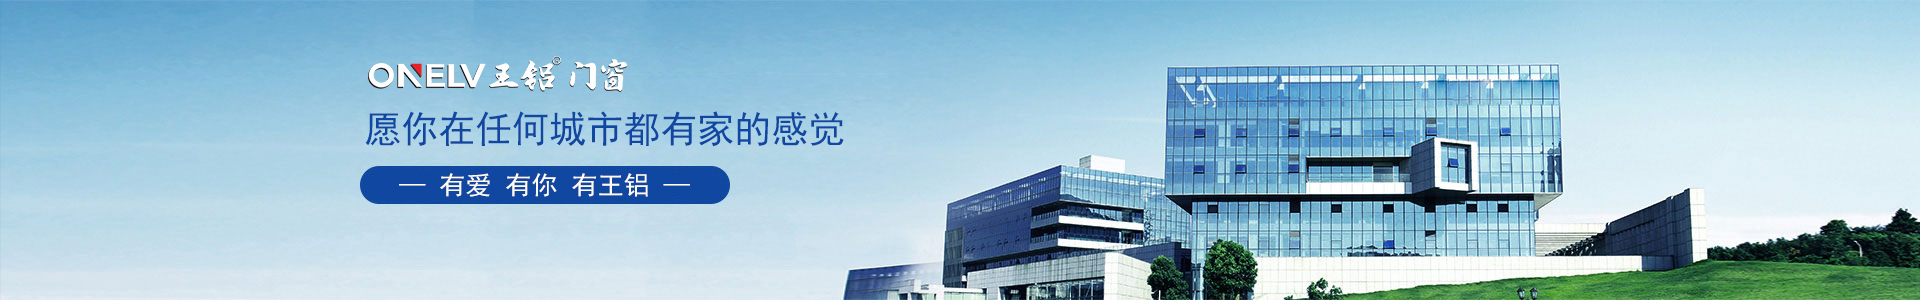 汉城三星工业厂房-工程案例-广东王铝铝业有限公司【企业官网】